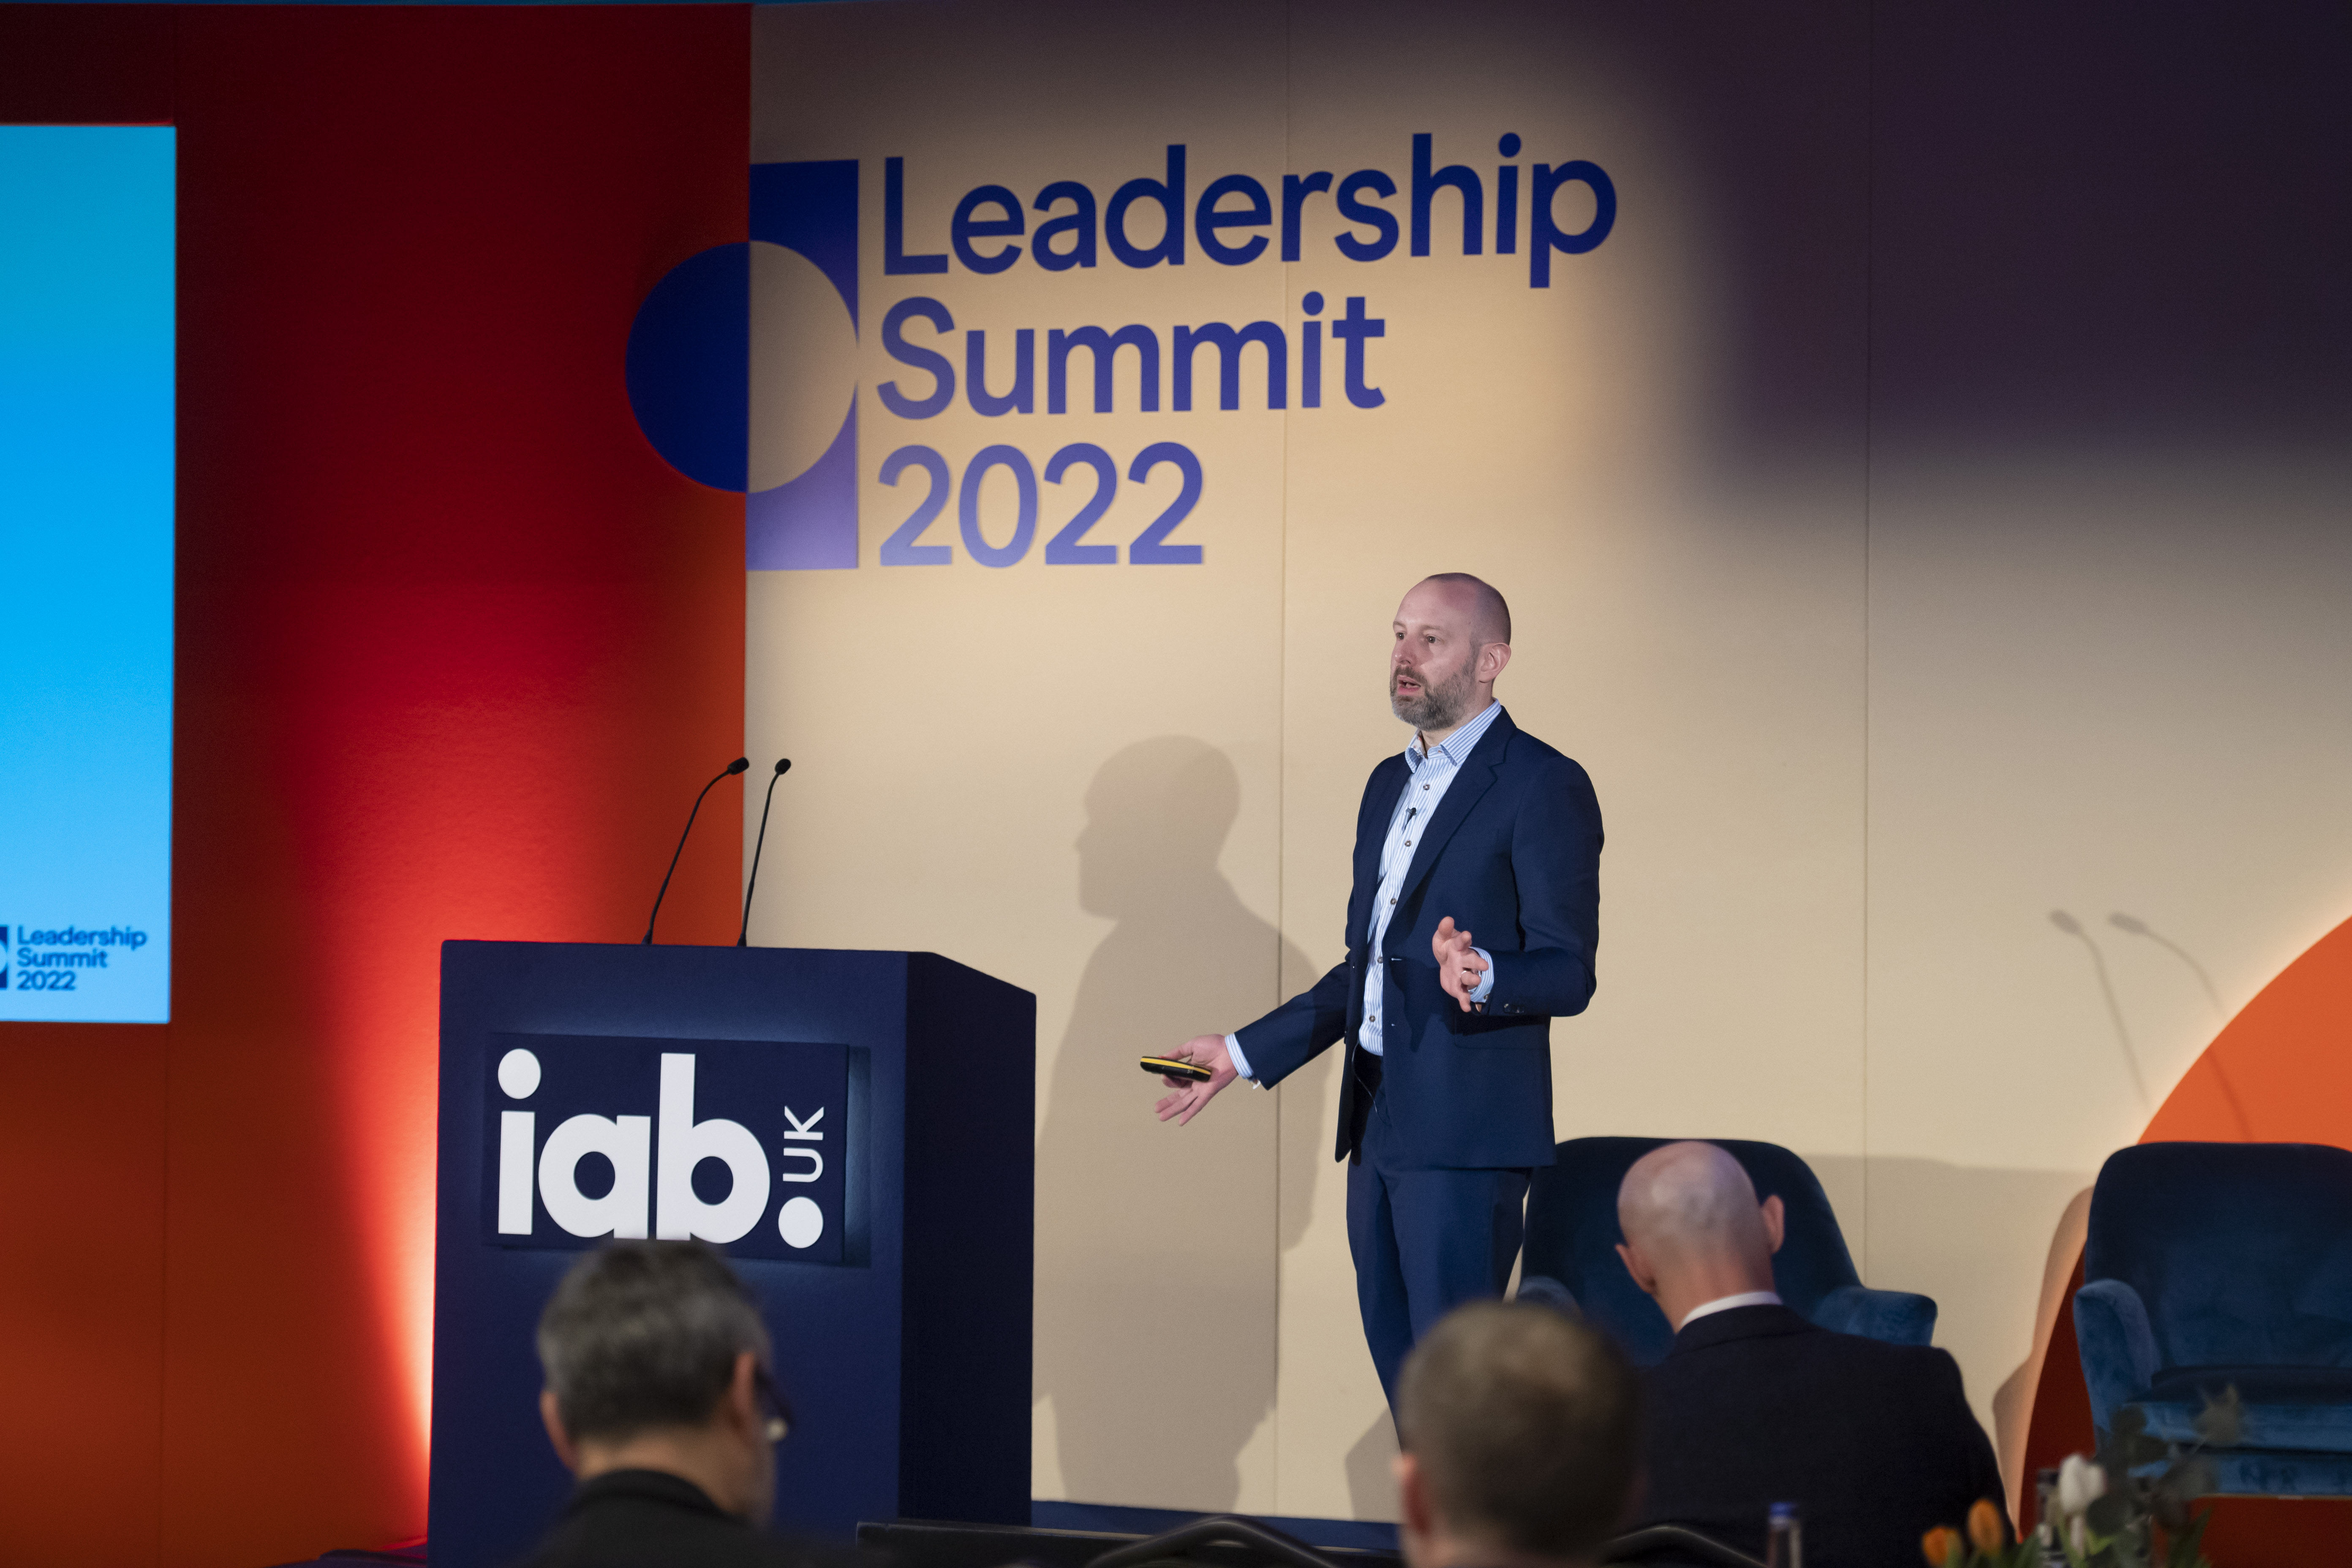 Jon Mew speaking at Leadership Summit 2022